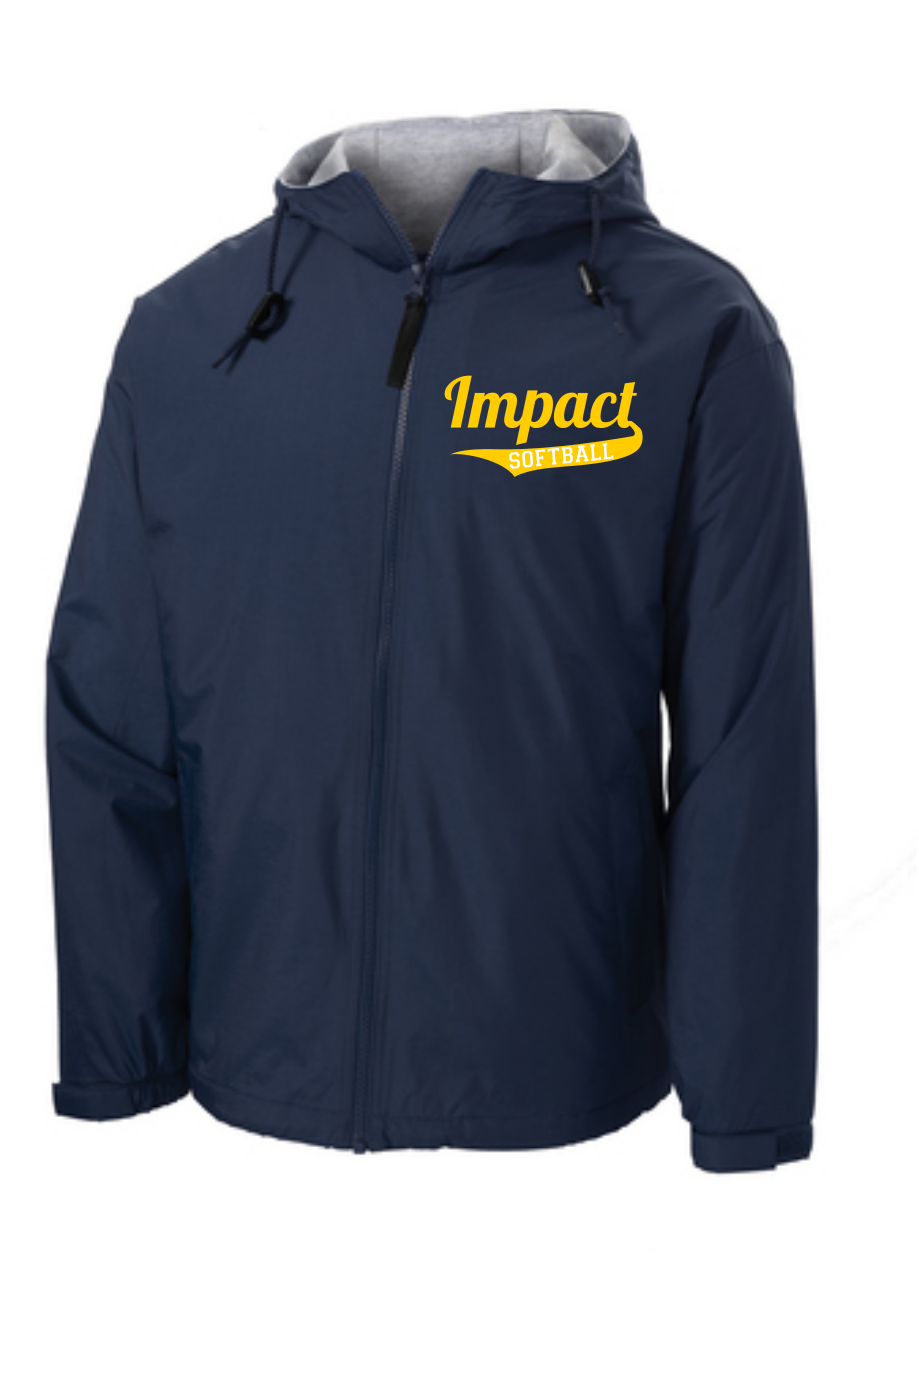 Impact Softball Team Jacket